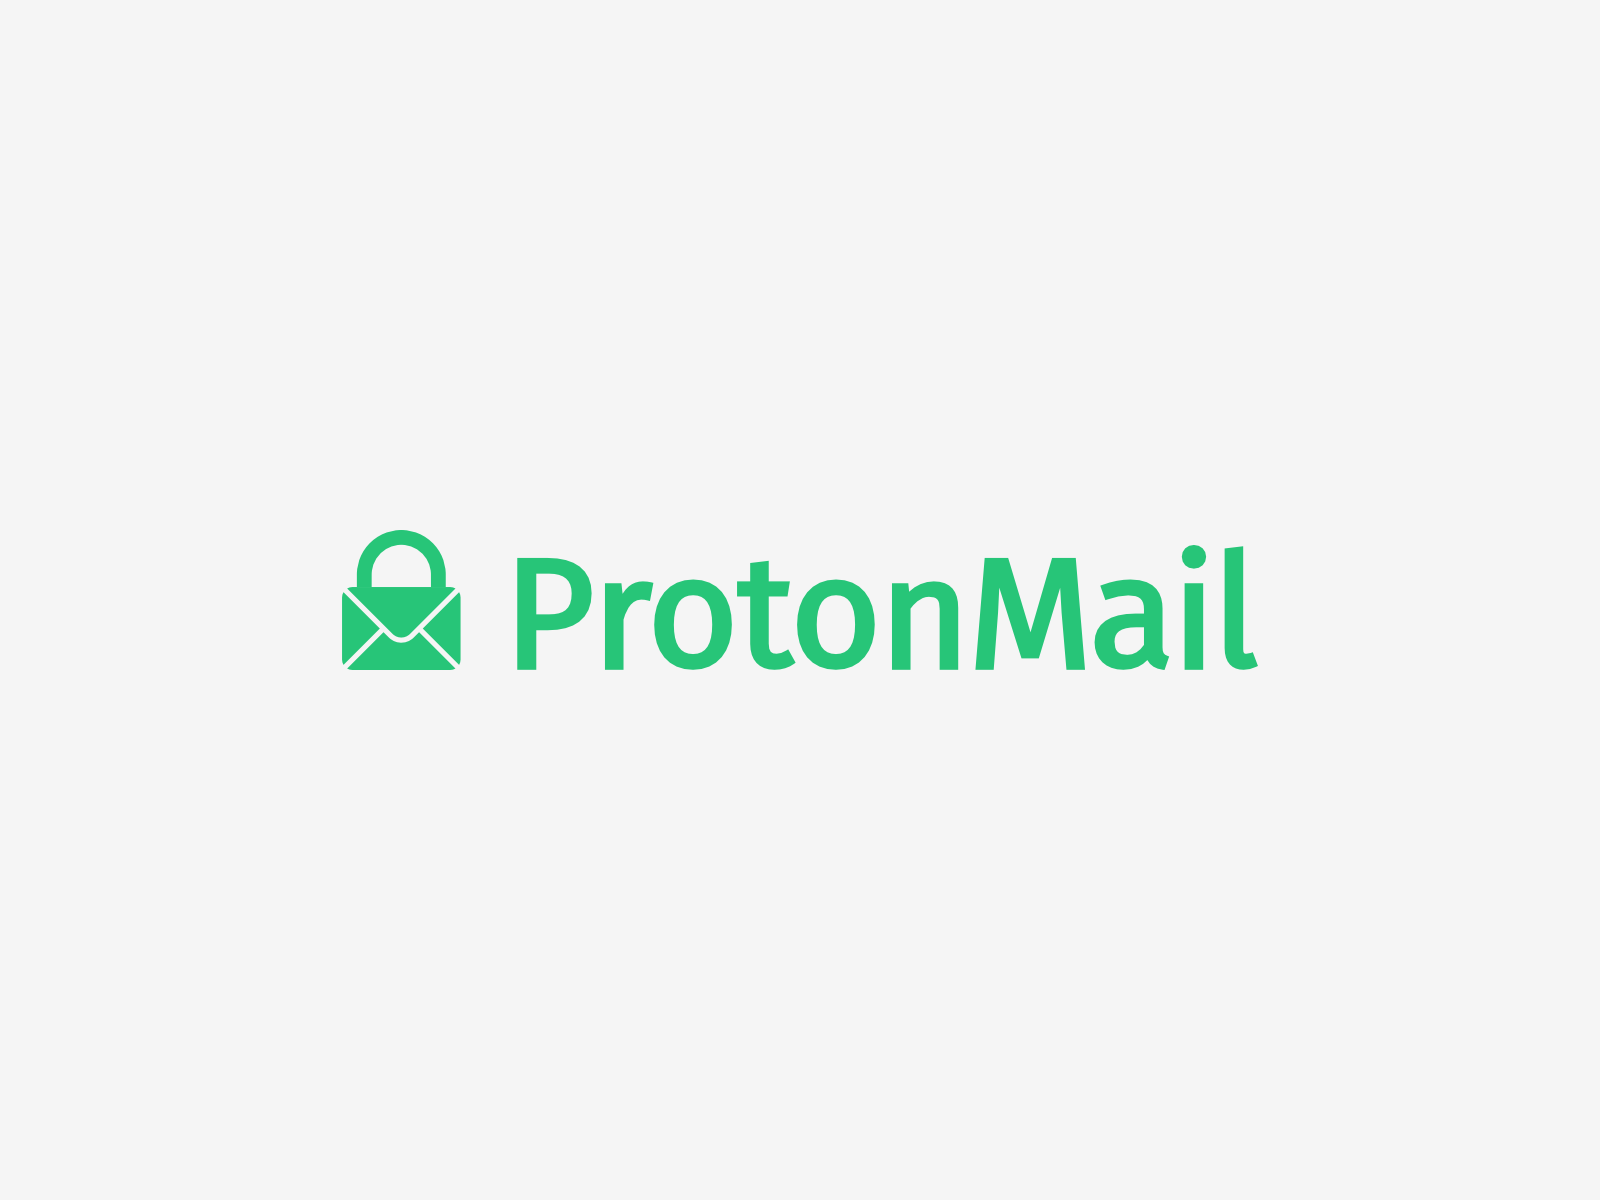 proton mail company